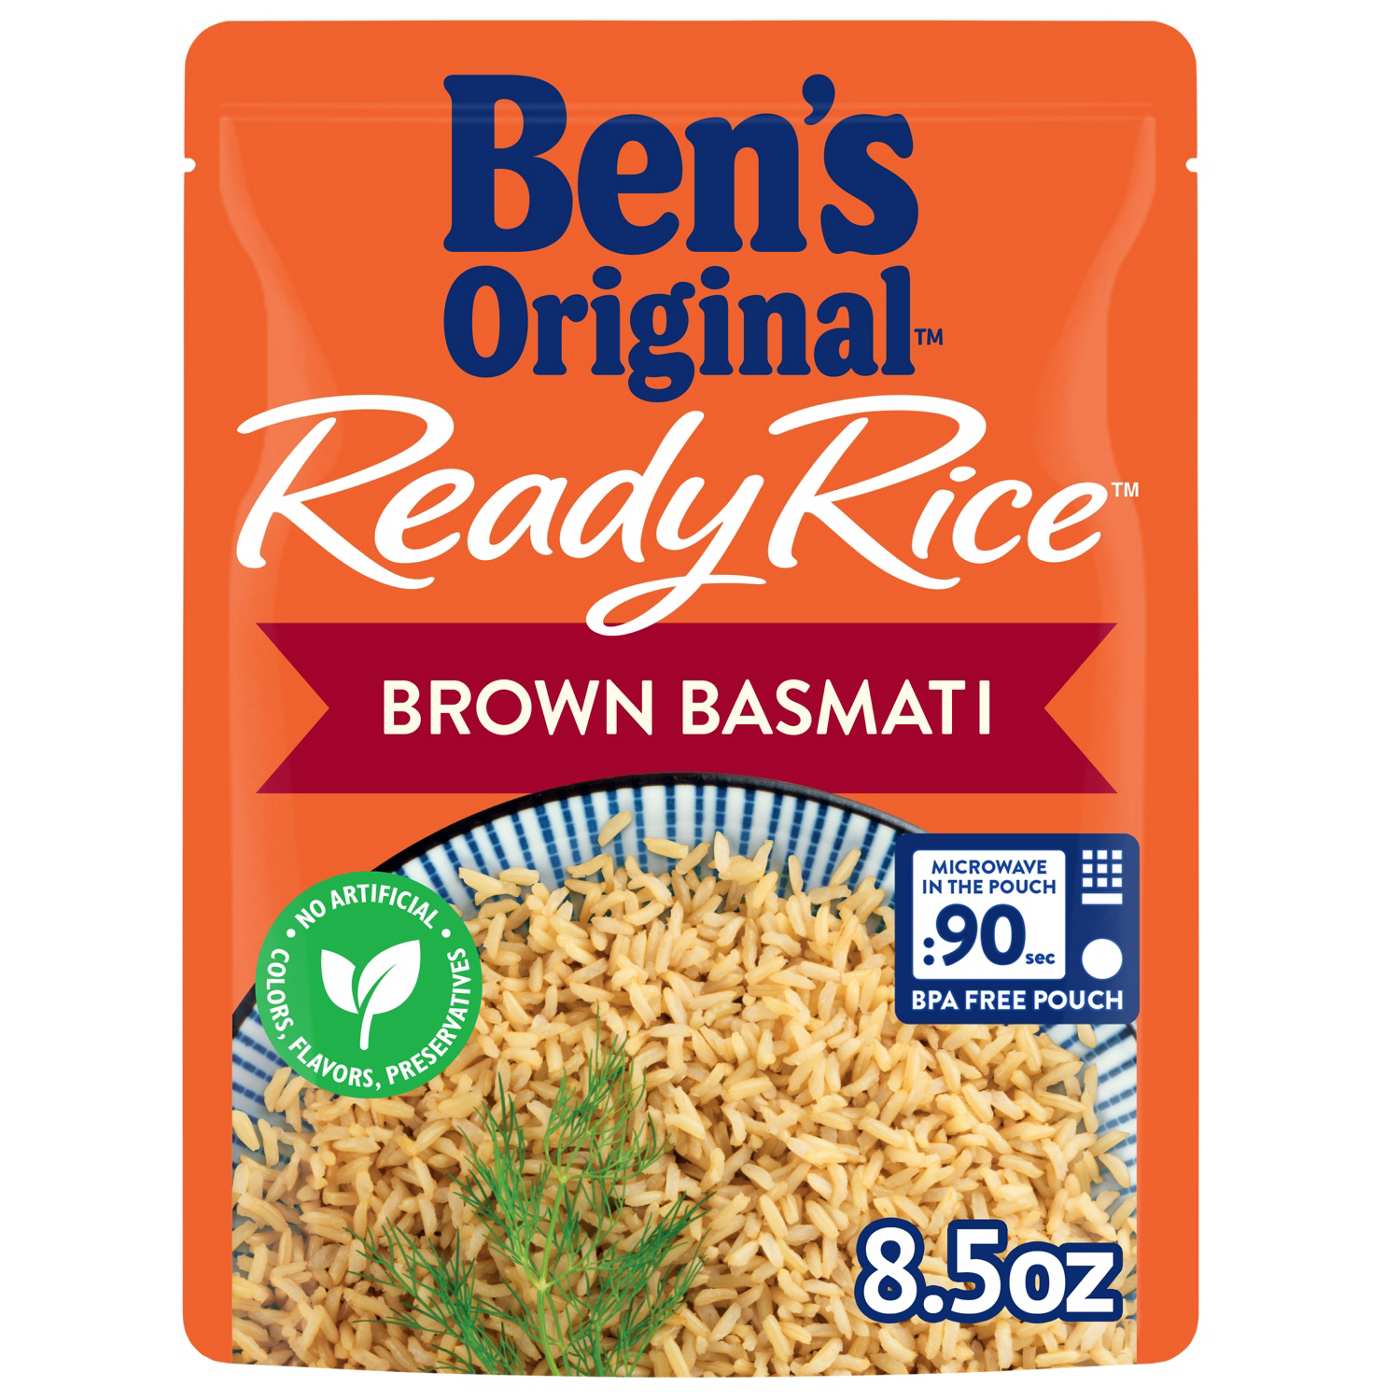 Uncle Bens - Rice - Whole Grain